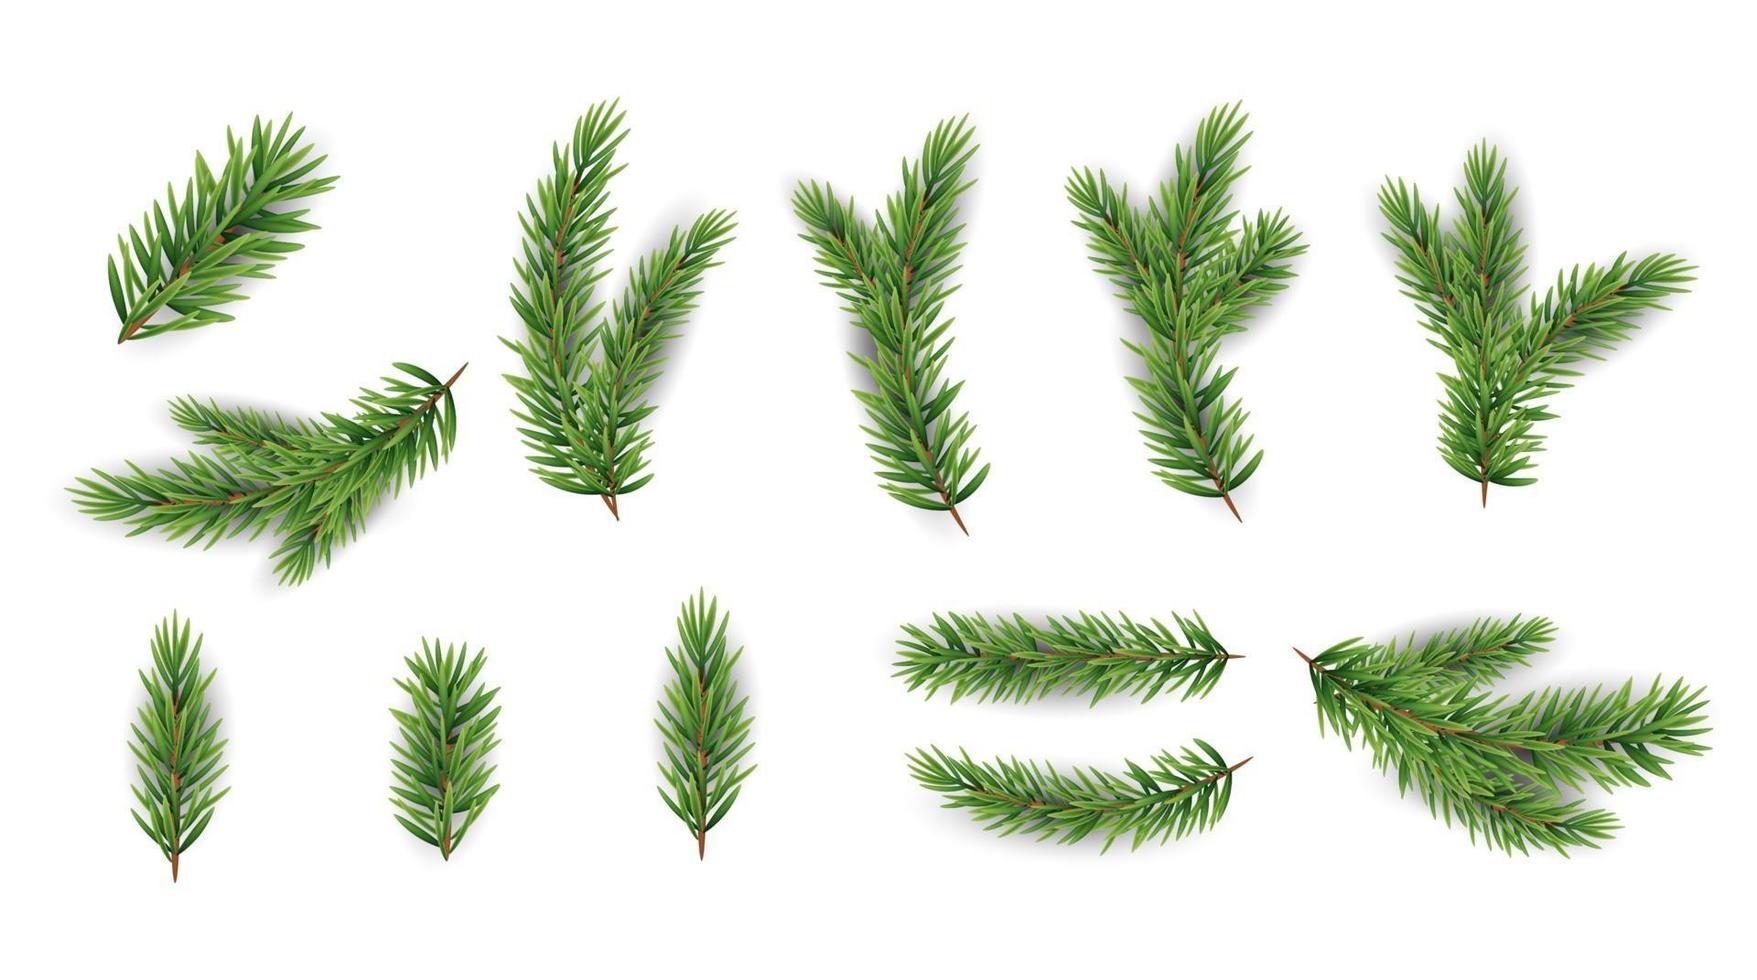 collectie set realistische dennentakken voor kerstboom, dennen. vector illustratie